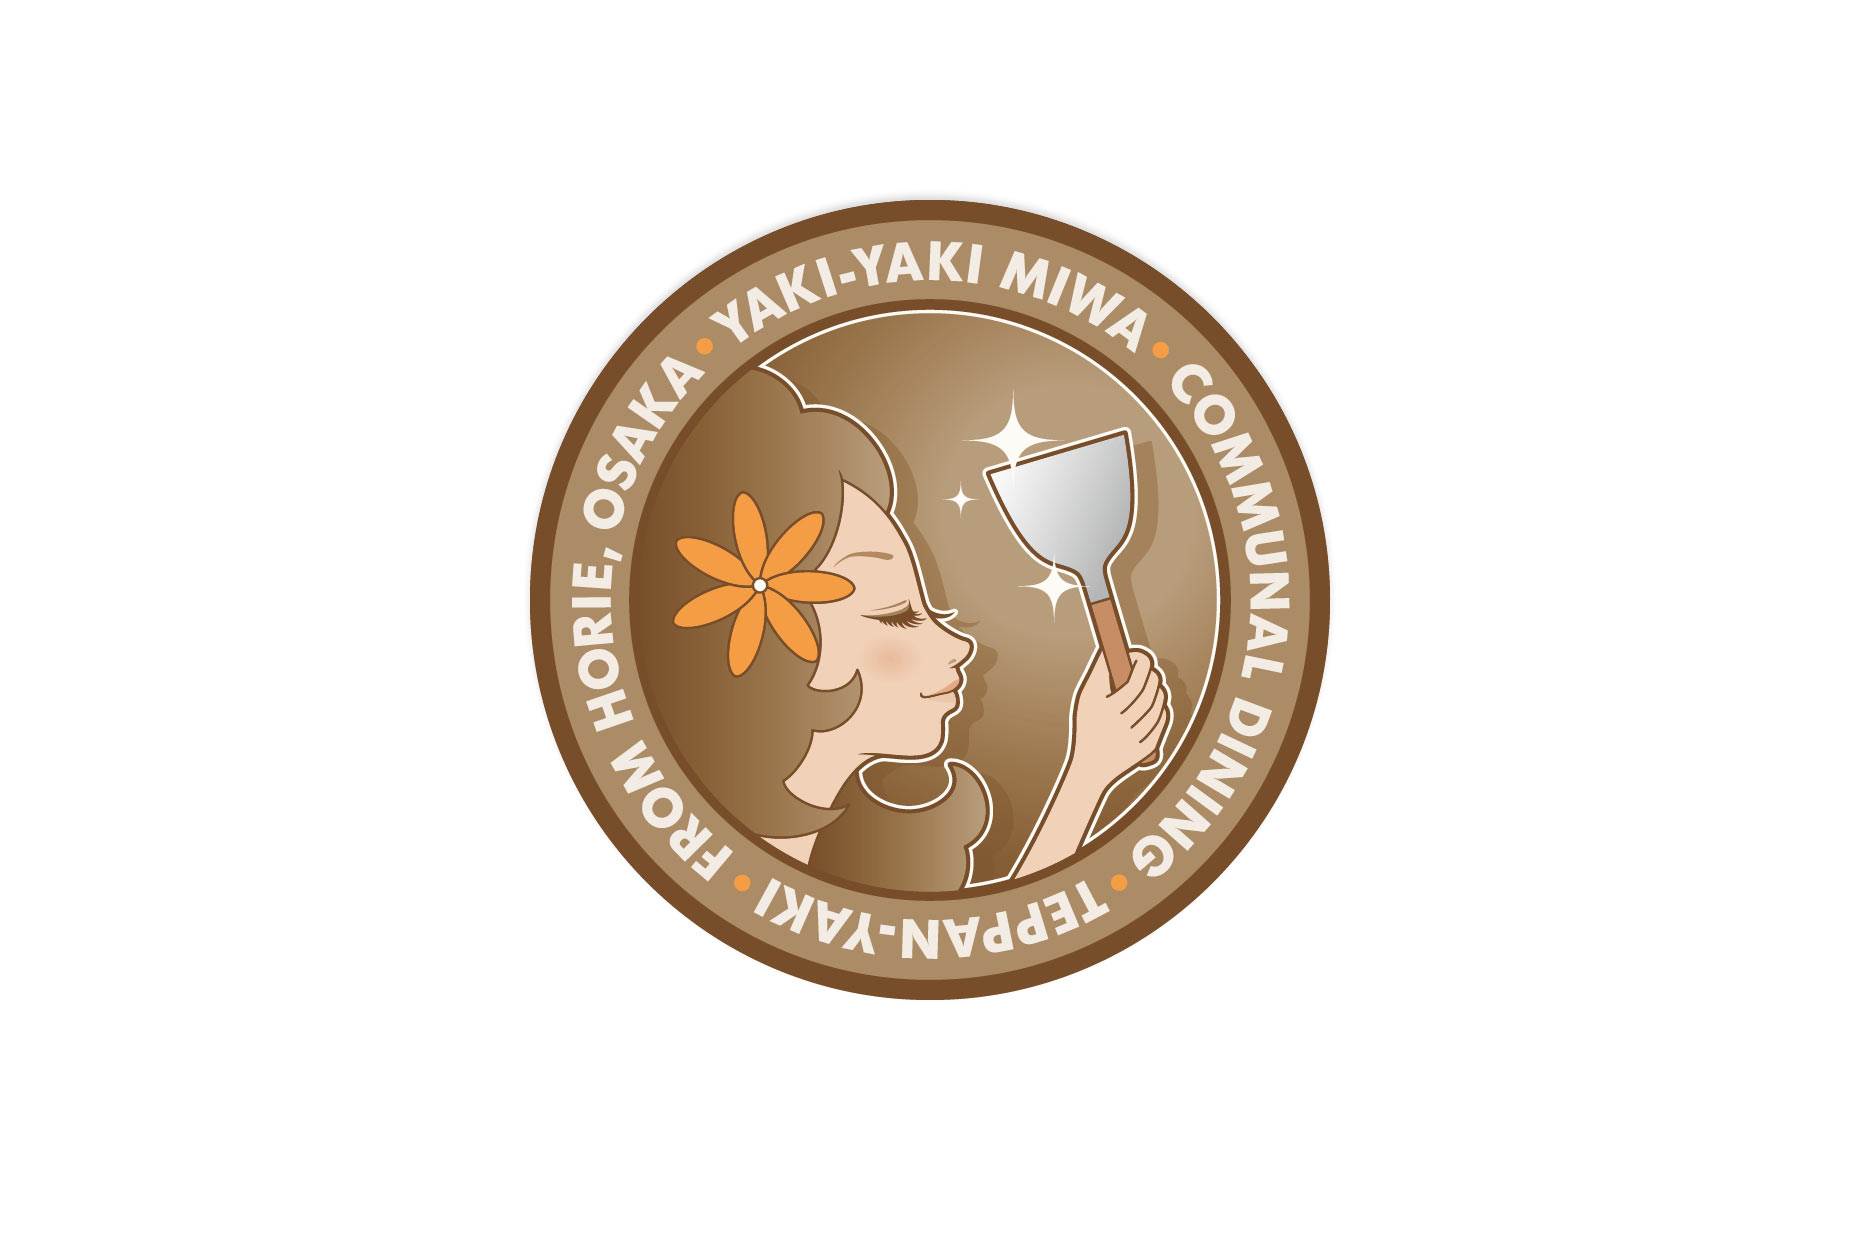 Yaki-yaki Miwa logo